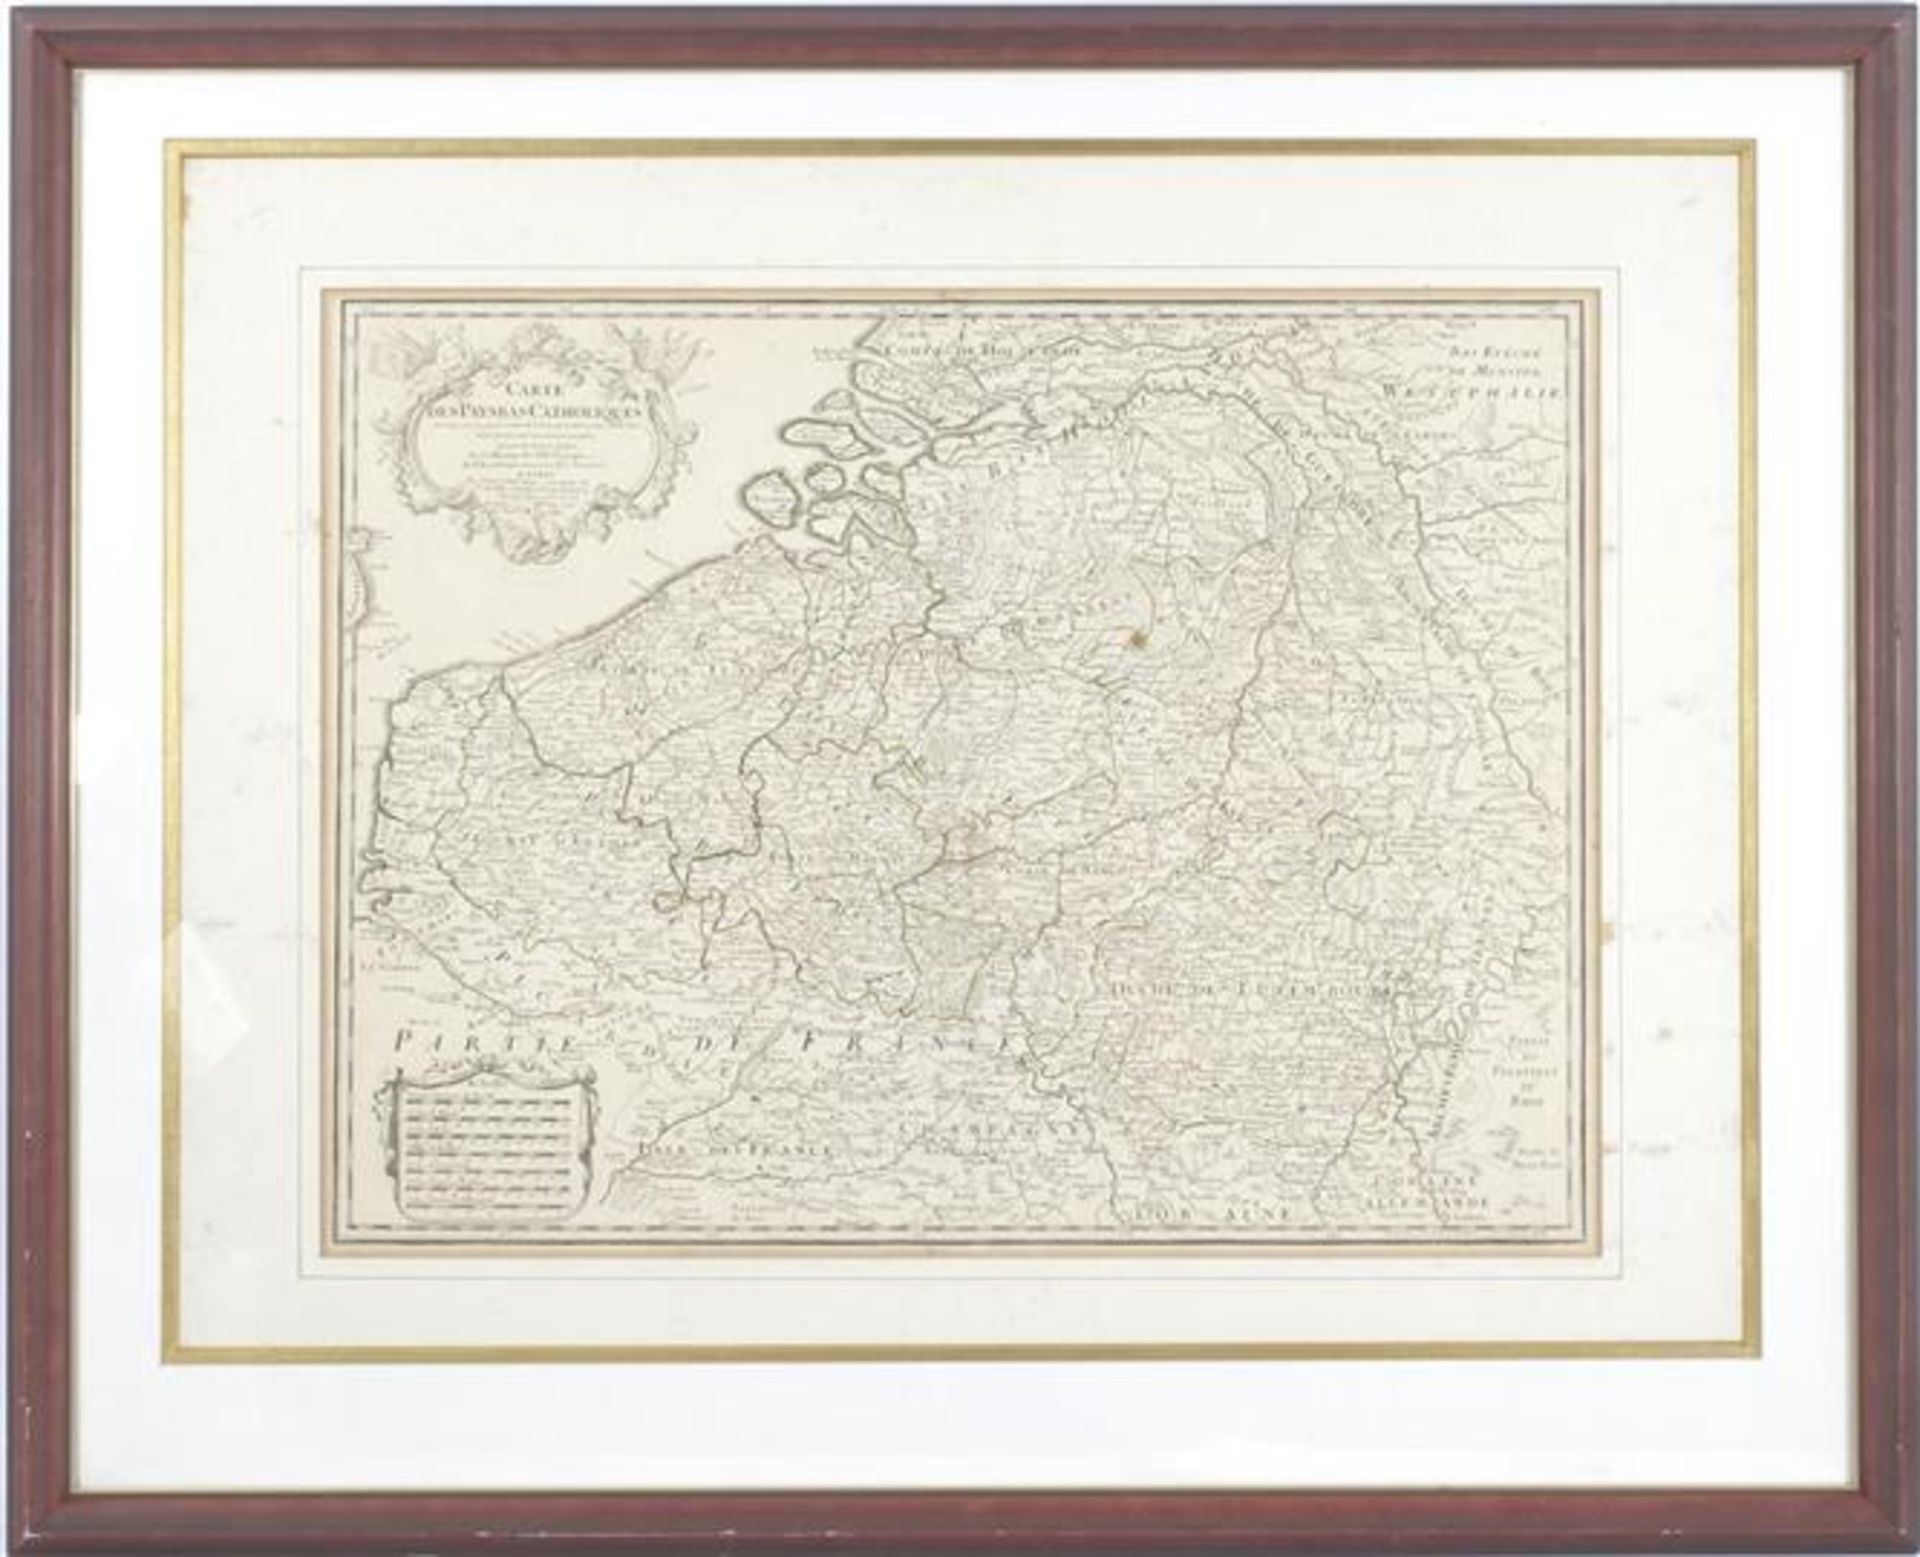 Topographic map, Carte des PaysBas Catholiques, 1780, 48x62 cm, outer size 78x96 cm